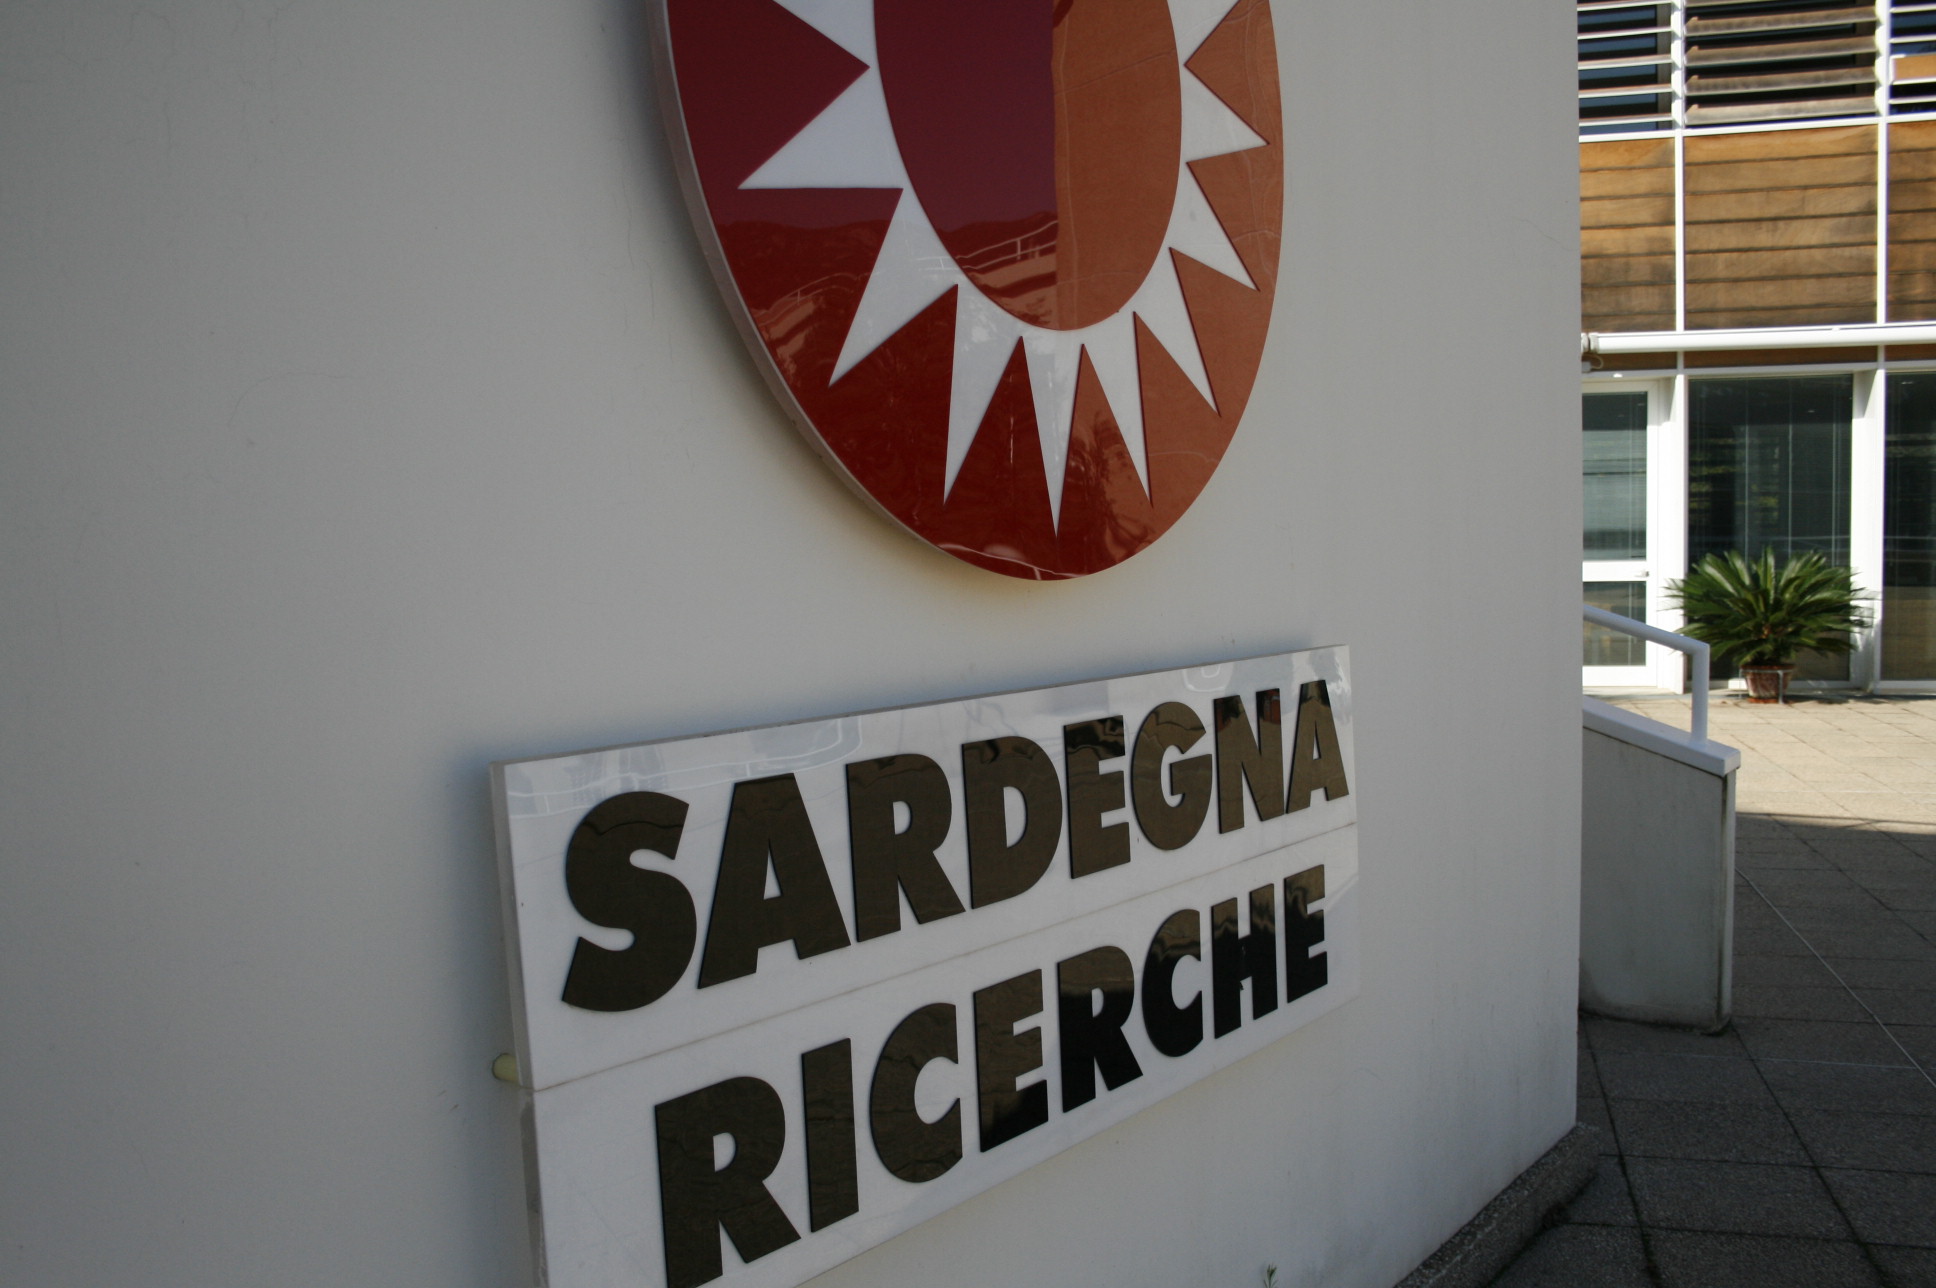 Sardegna Ricerche